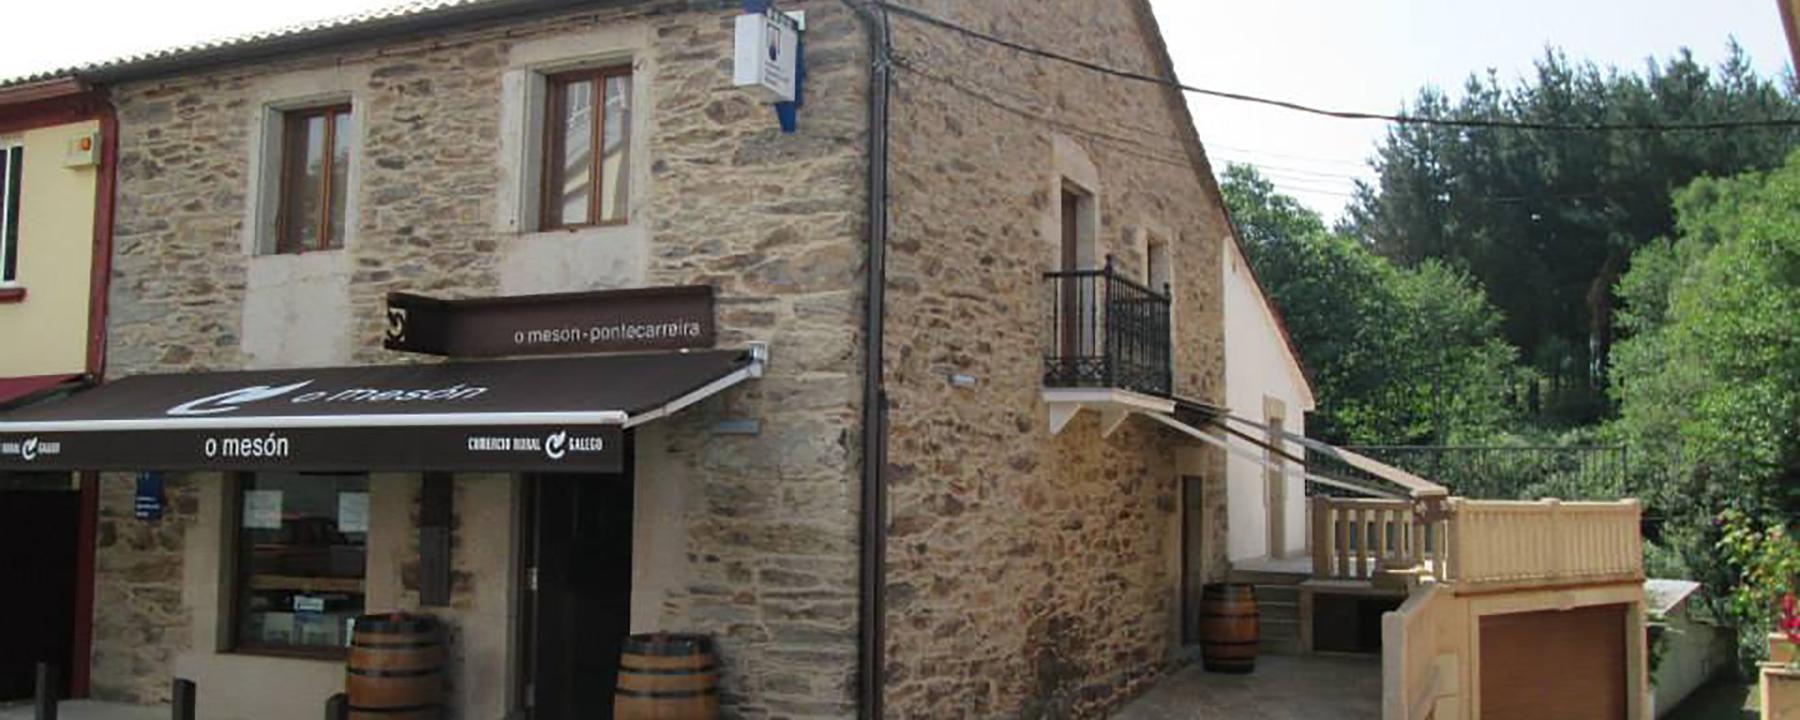 O Mesón - Comercio Rural Galego